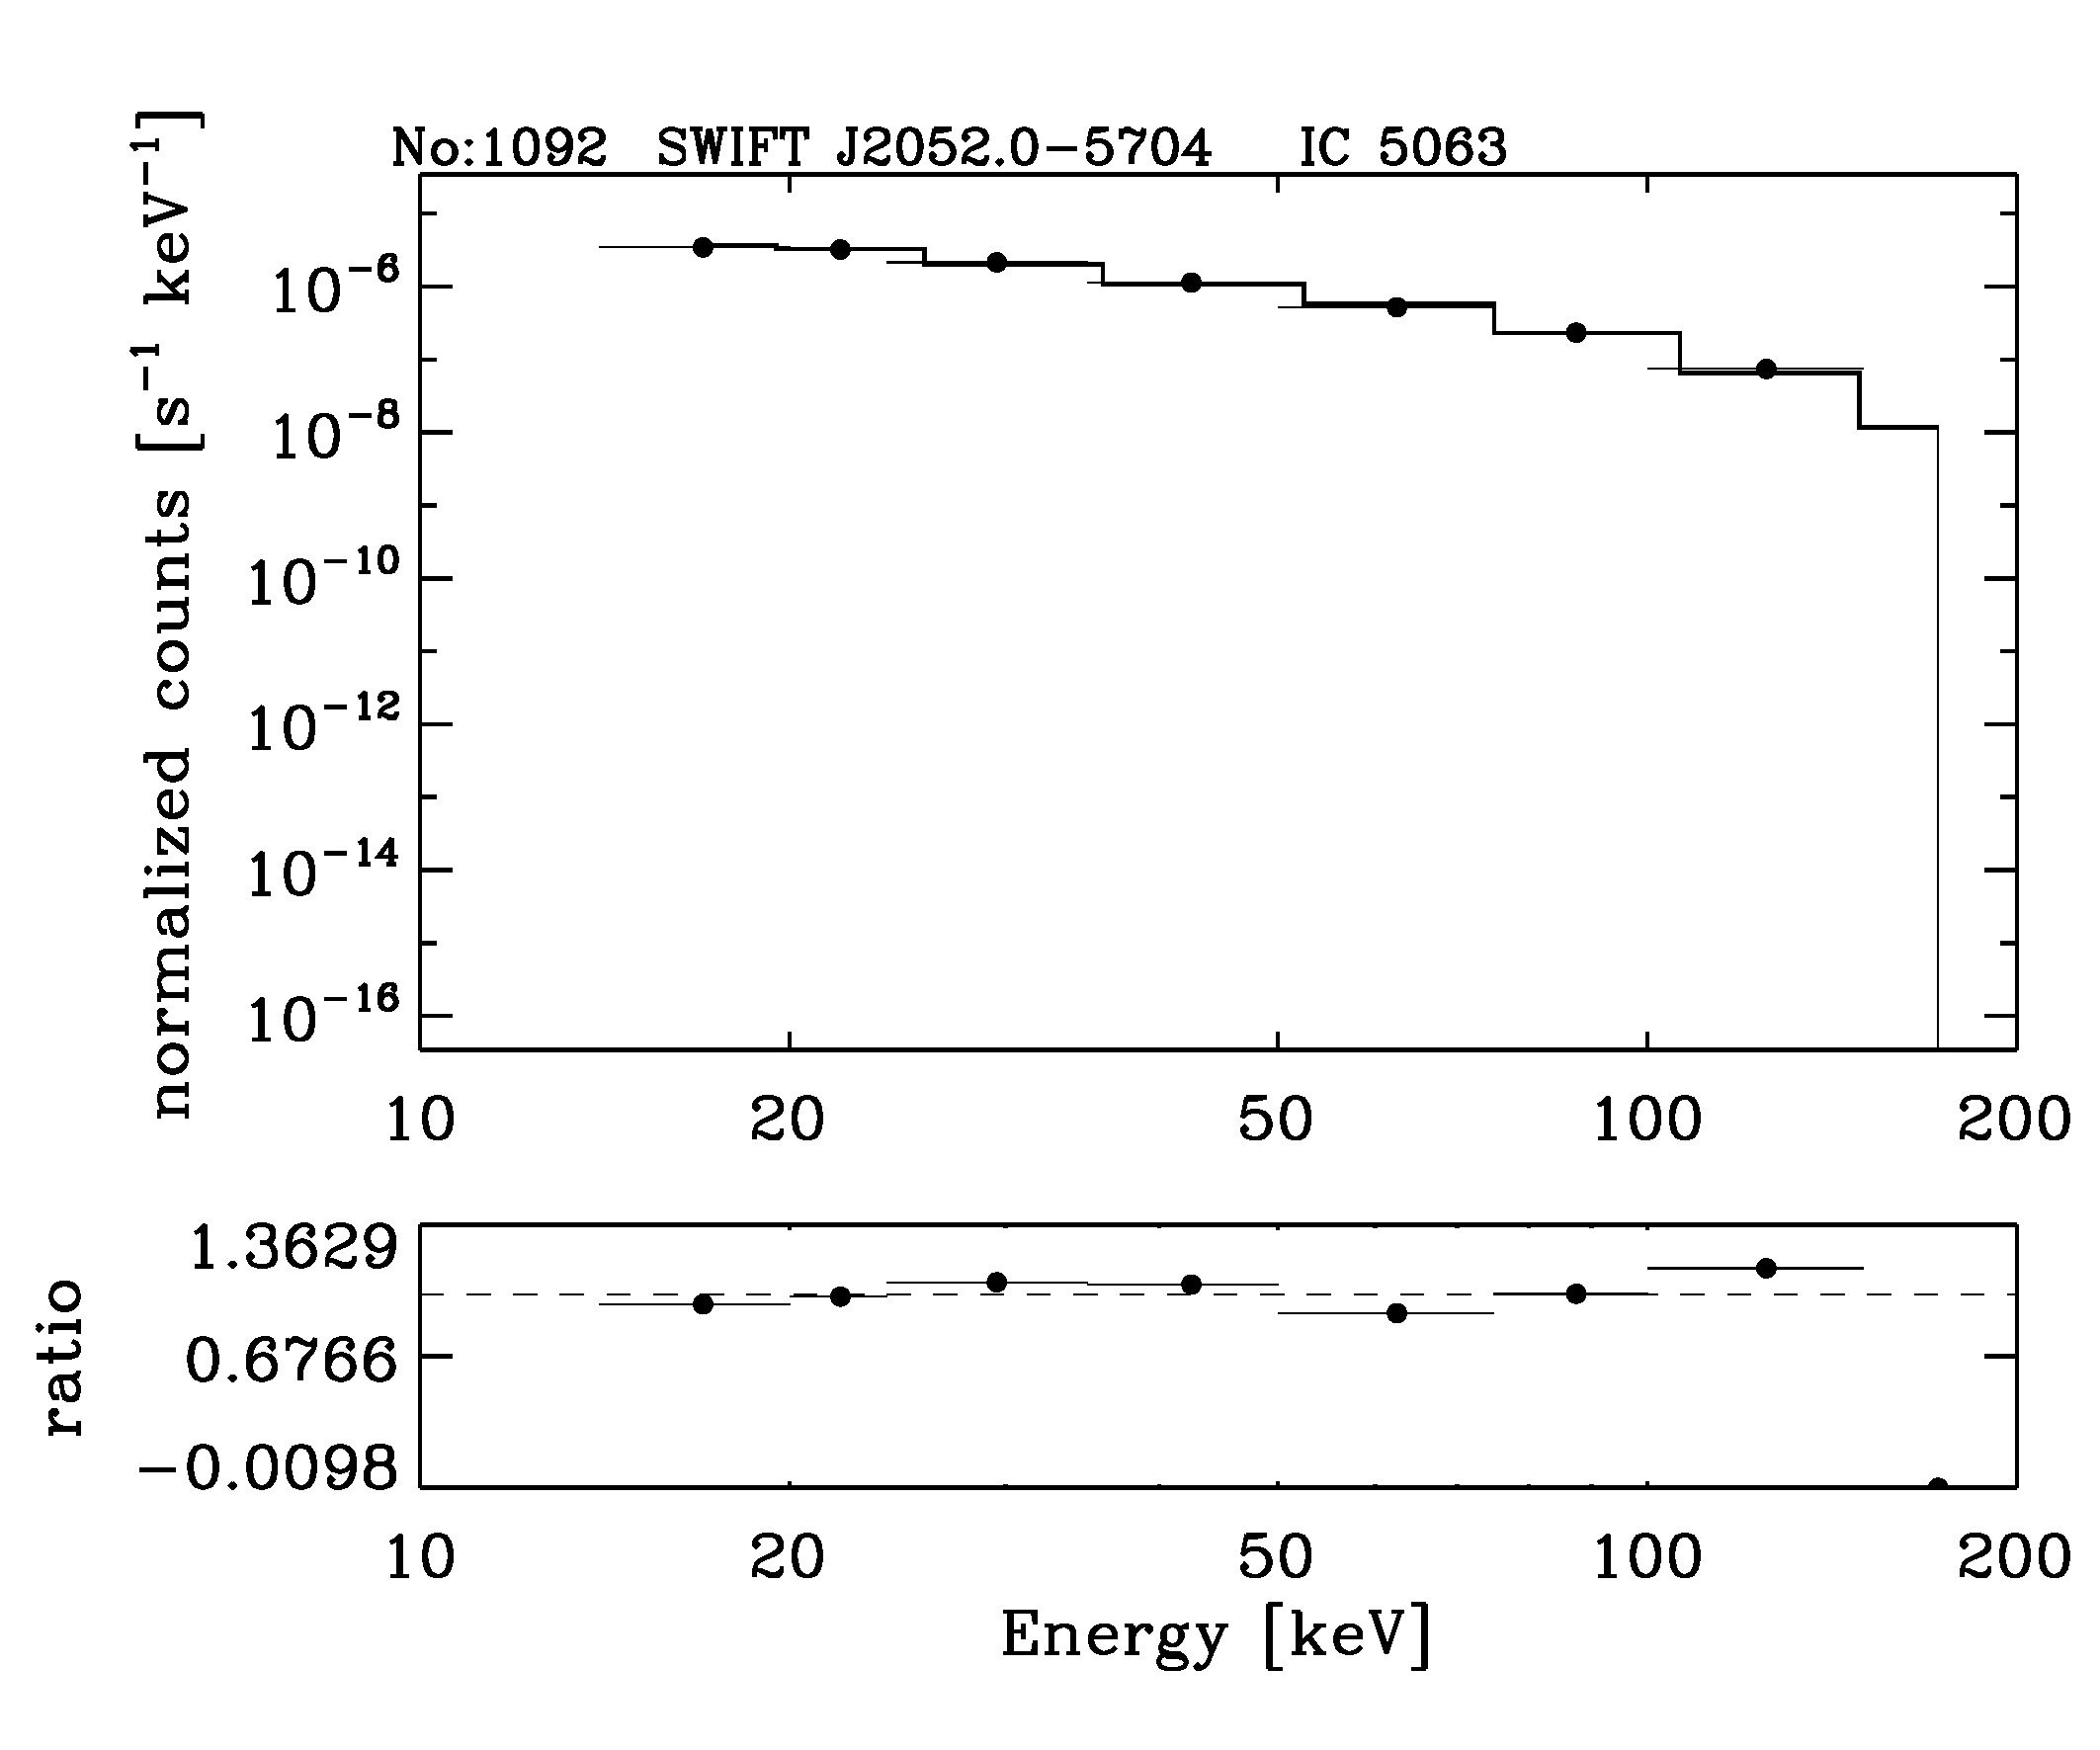 BAT Spectrum for SWIFT J2052.0-5704